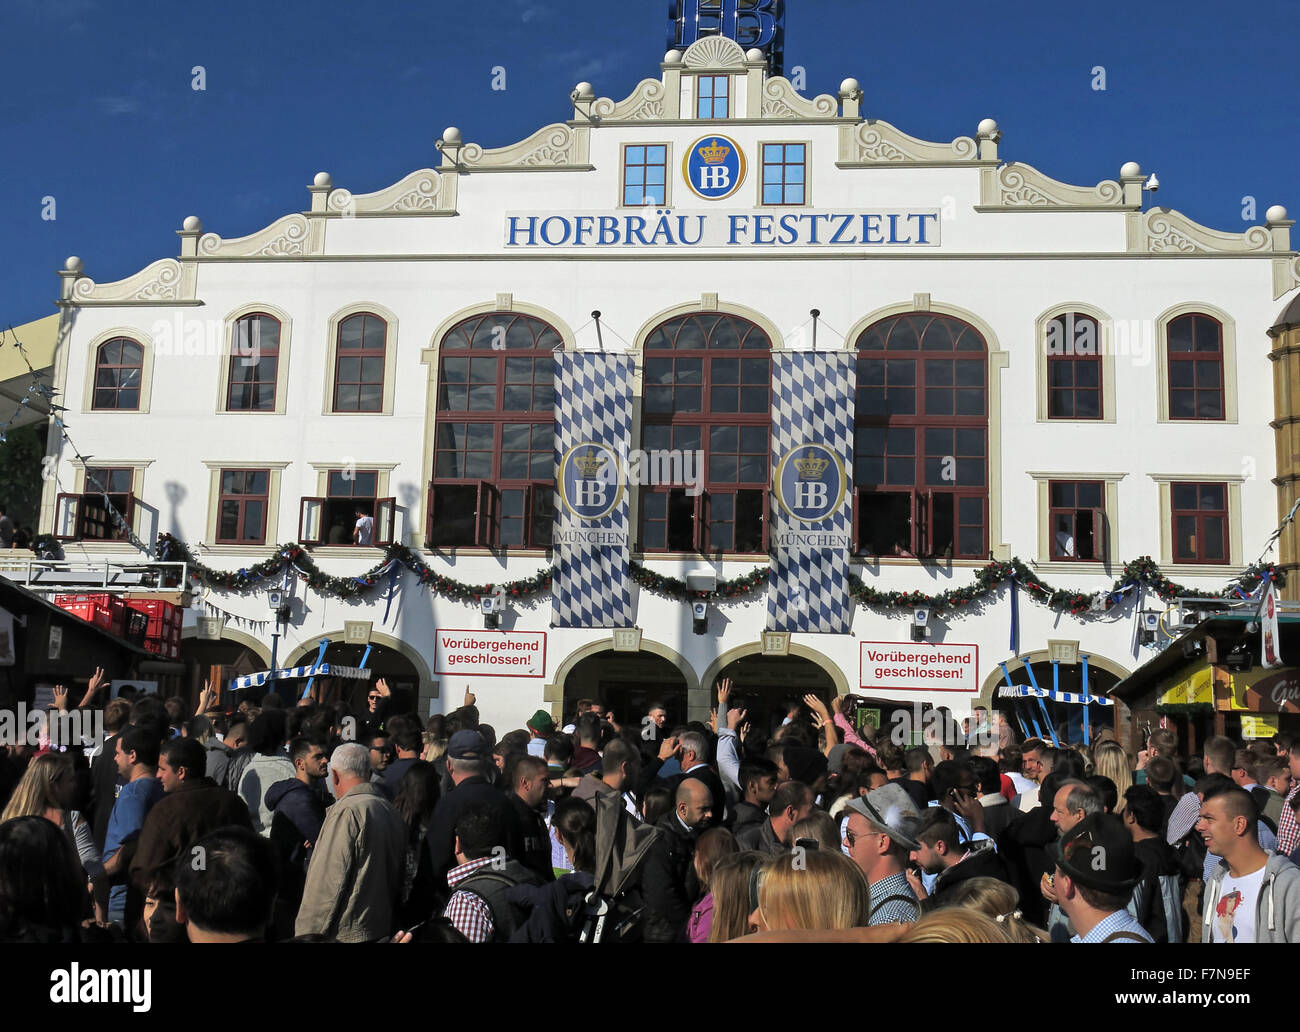 L'Oktoberfest de Munich en Allemagne Volksfest beer festival et fête foraine, Festzelt Hofbrau voyage Banque D'Images